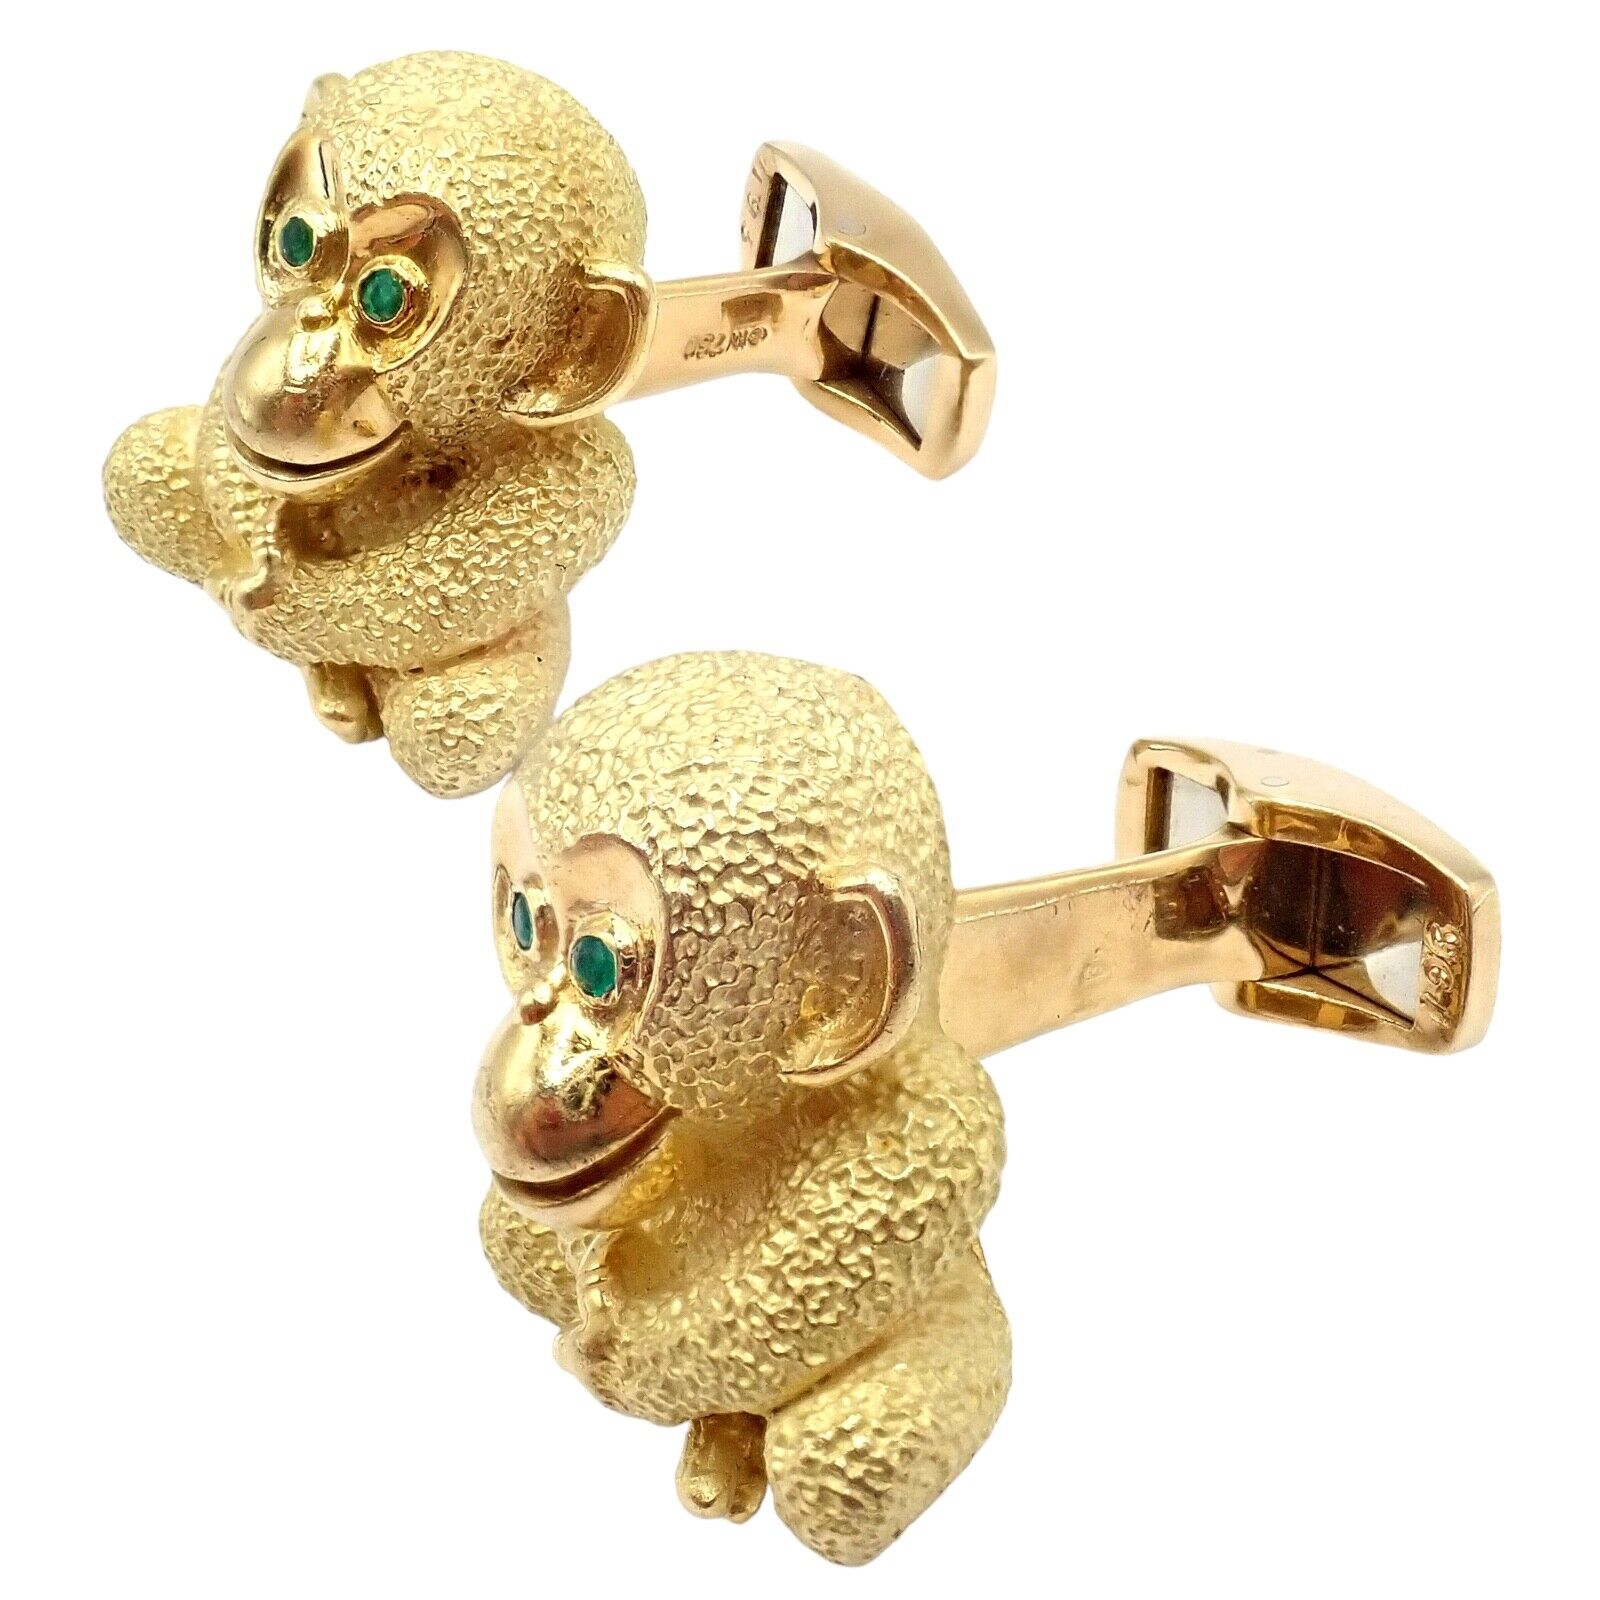 Kurt Wayne Jewelry & Watches:Men's Jewelry:Cufflinks Authentic Kurt Wayne 18k Yellow Gold Emerald Whimsical Monkey Cufflinks